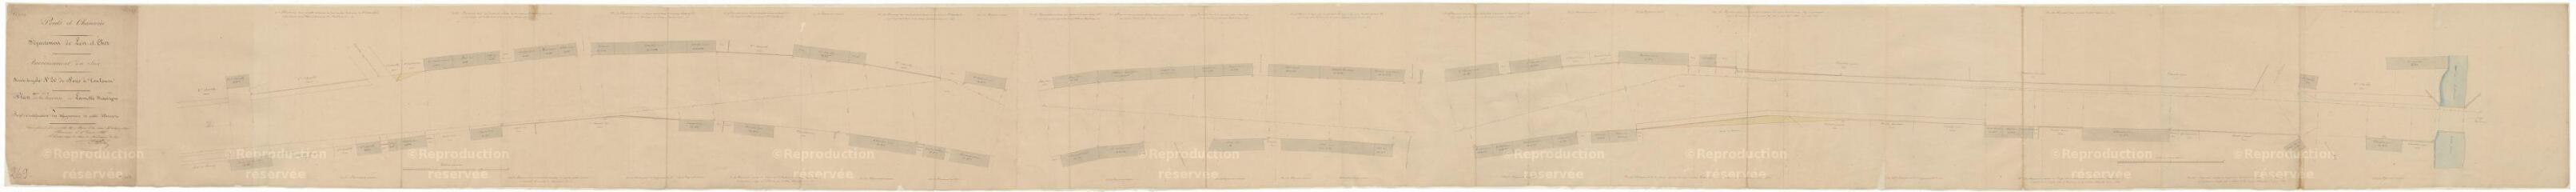 1 vue Lamotte-Beuvron : R.N. 20 (route nationale) ; plan de la traverse du bourg, 1845. Provenance : service des Ponts-et-Chaussées (versé le 25 juin 1929).